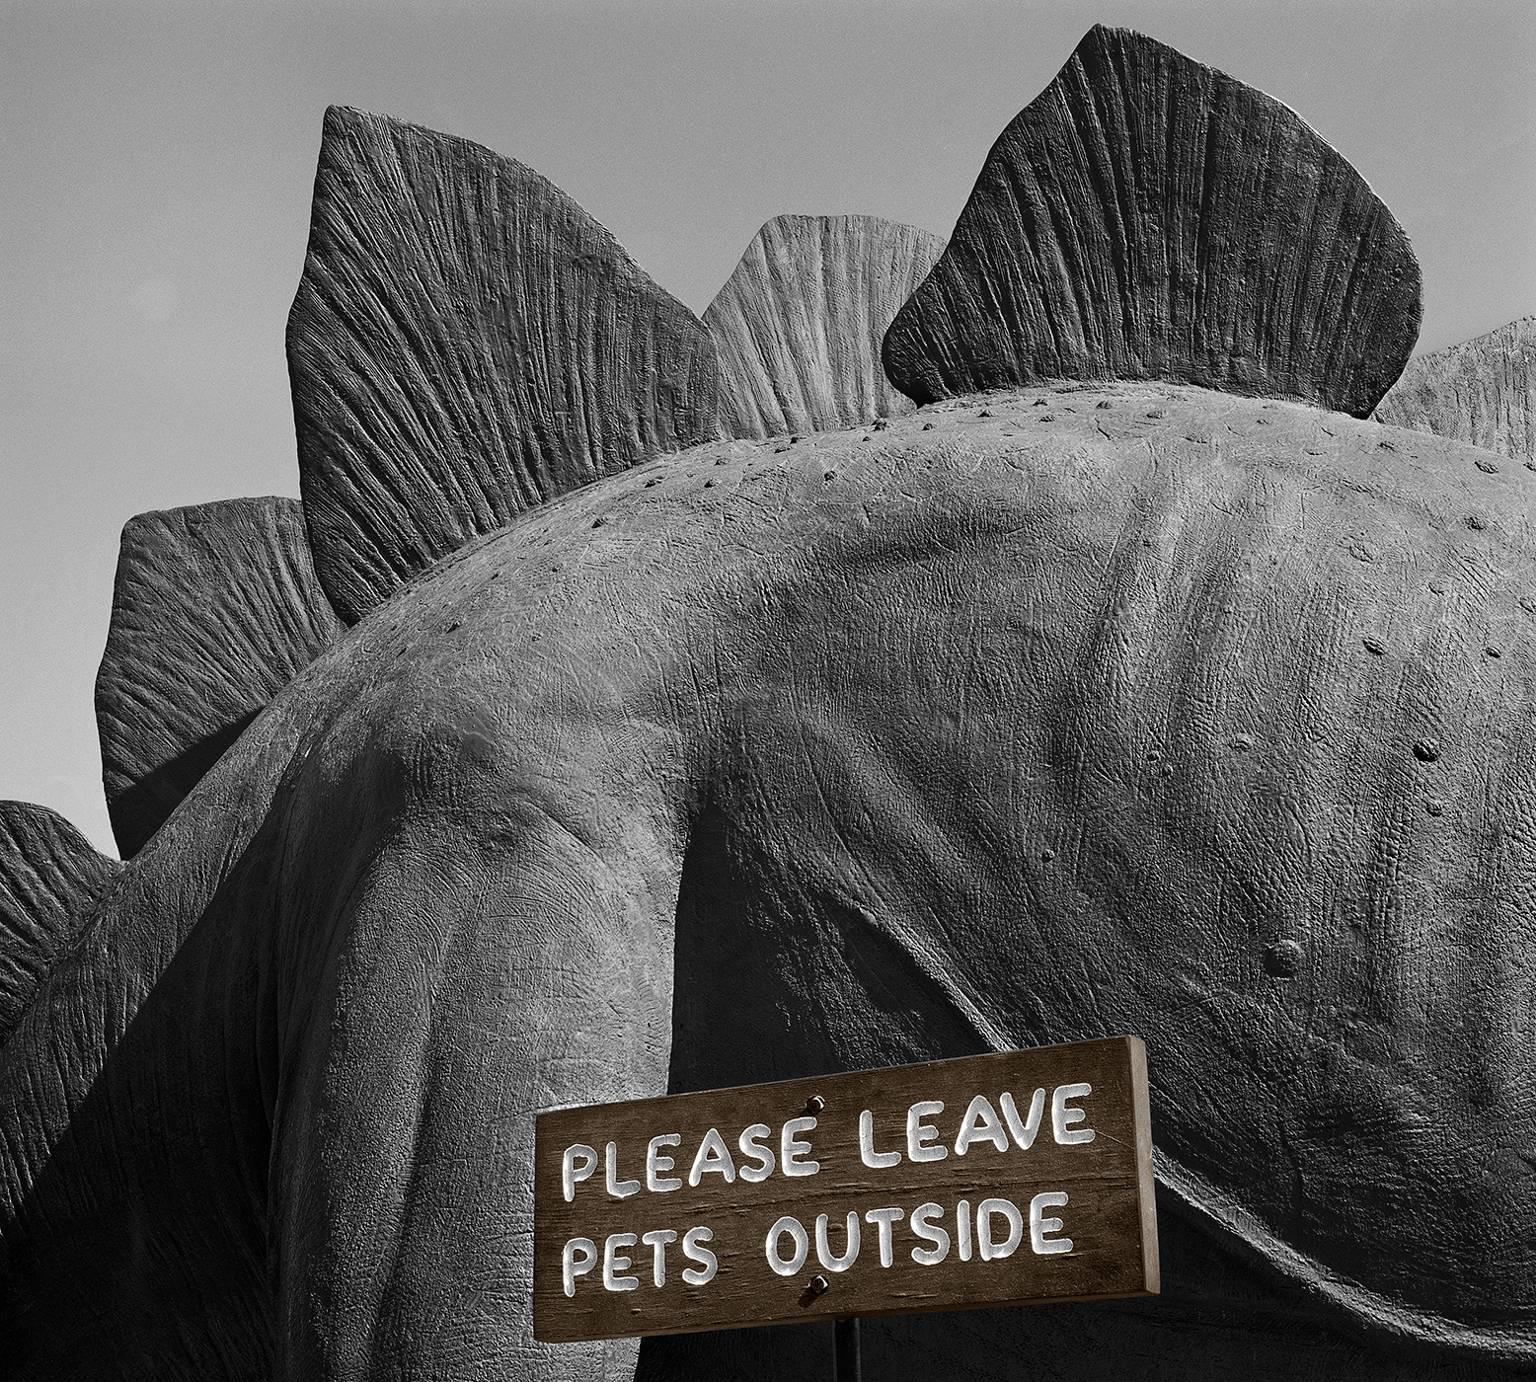 Bob Kolbrener Landscape Photograph - Please Leave Pets Outside, Utah